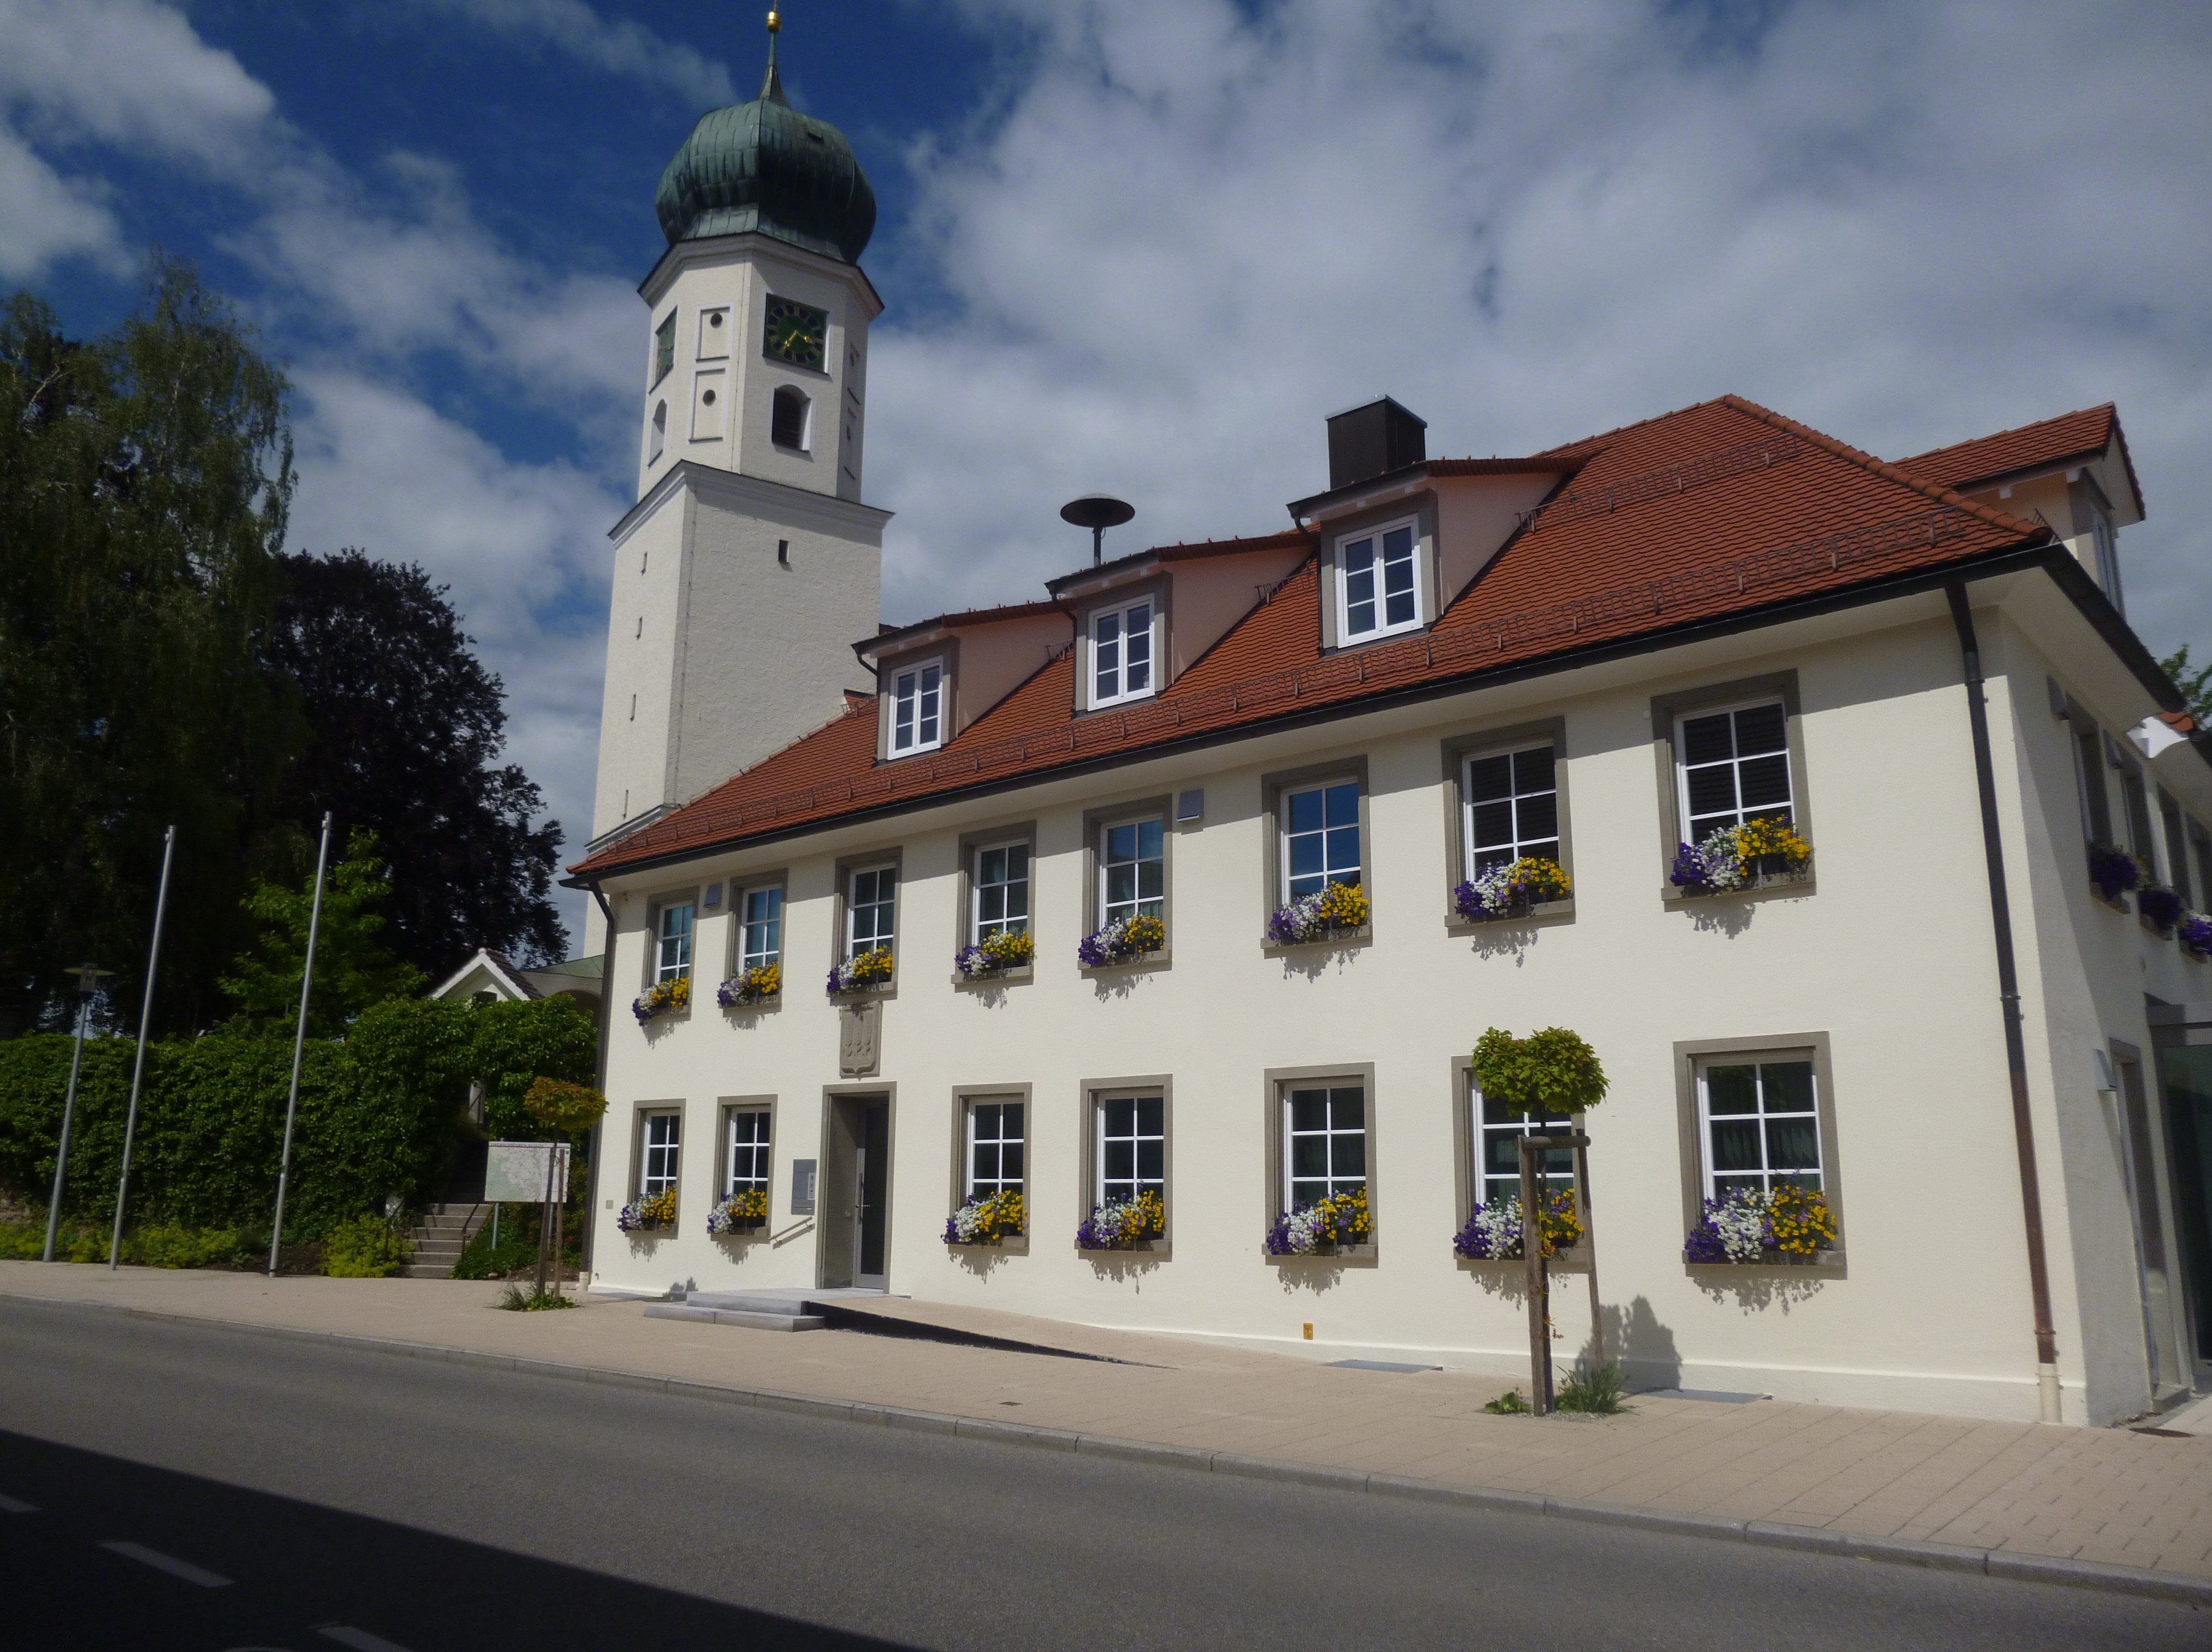  Rathaus mit Blumenschmuck 